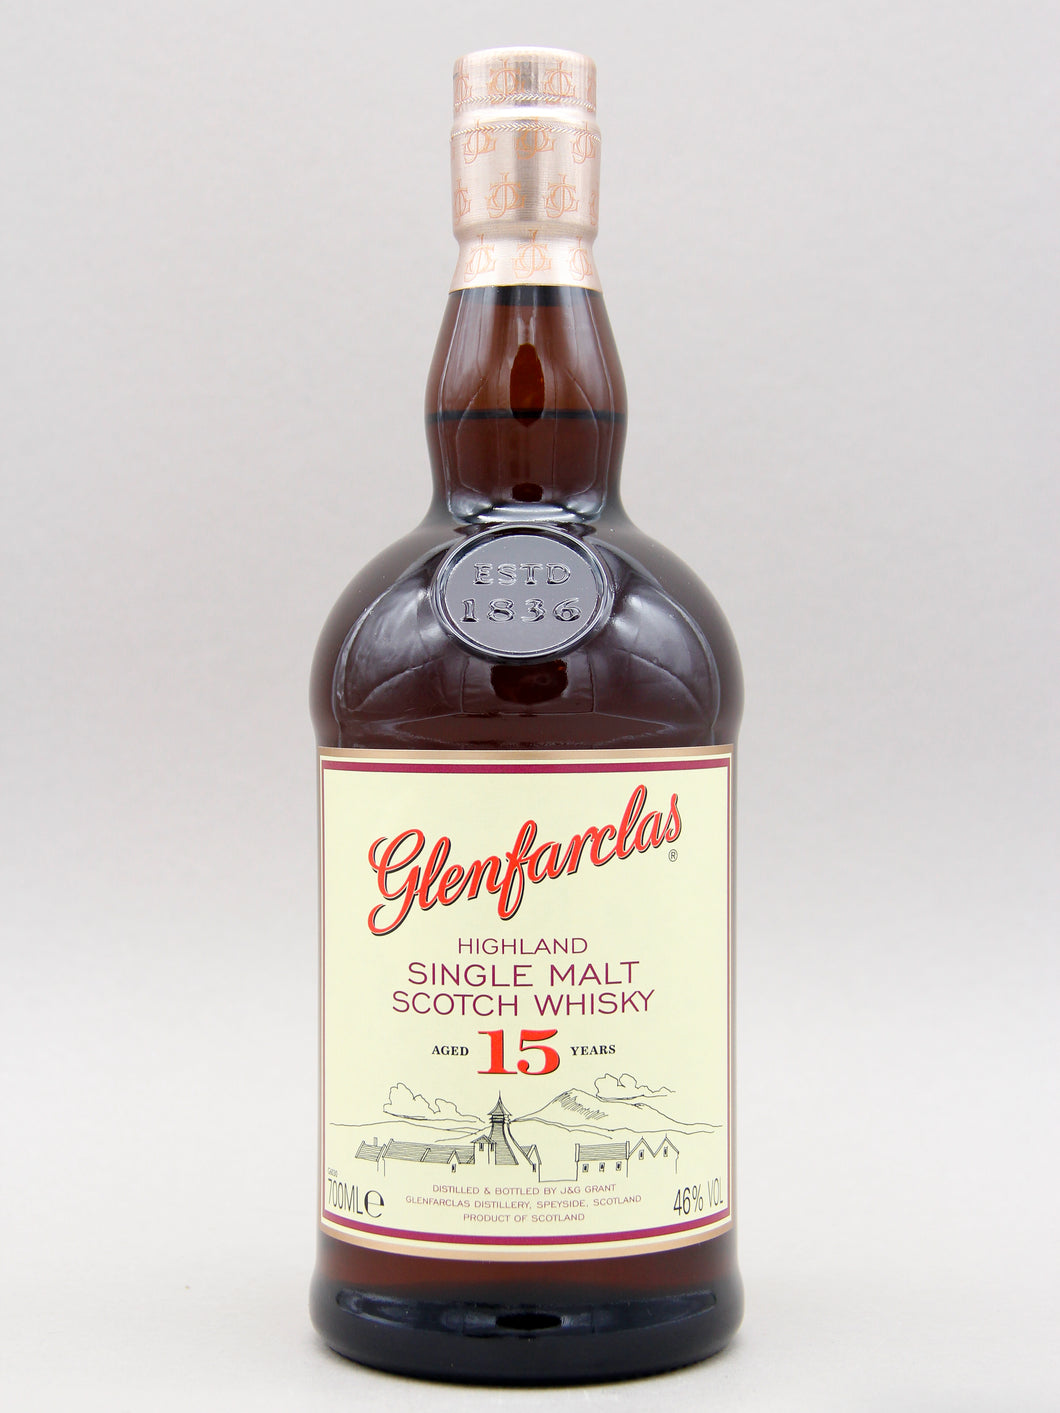 Glenfarclas 15 Years, Highland Single Malt Scotch Whisky (46%, 70cl)